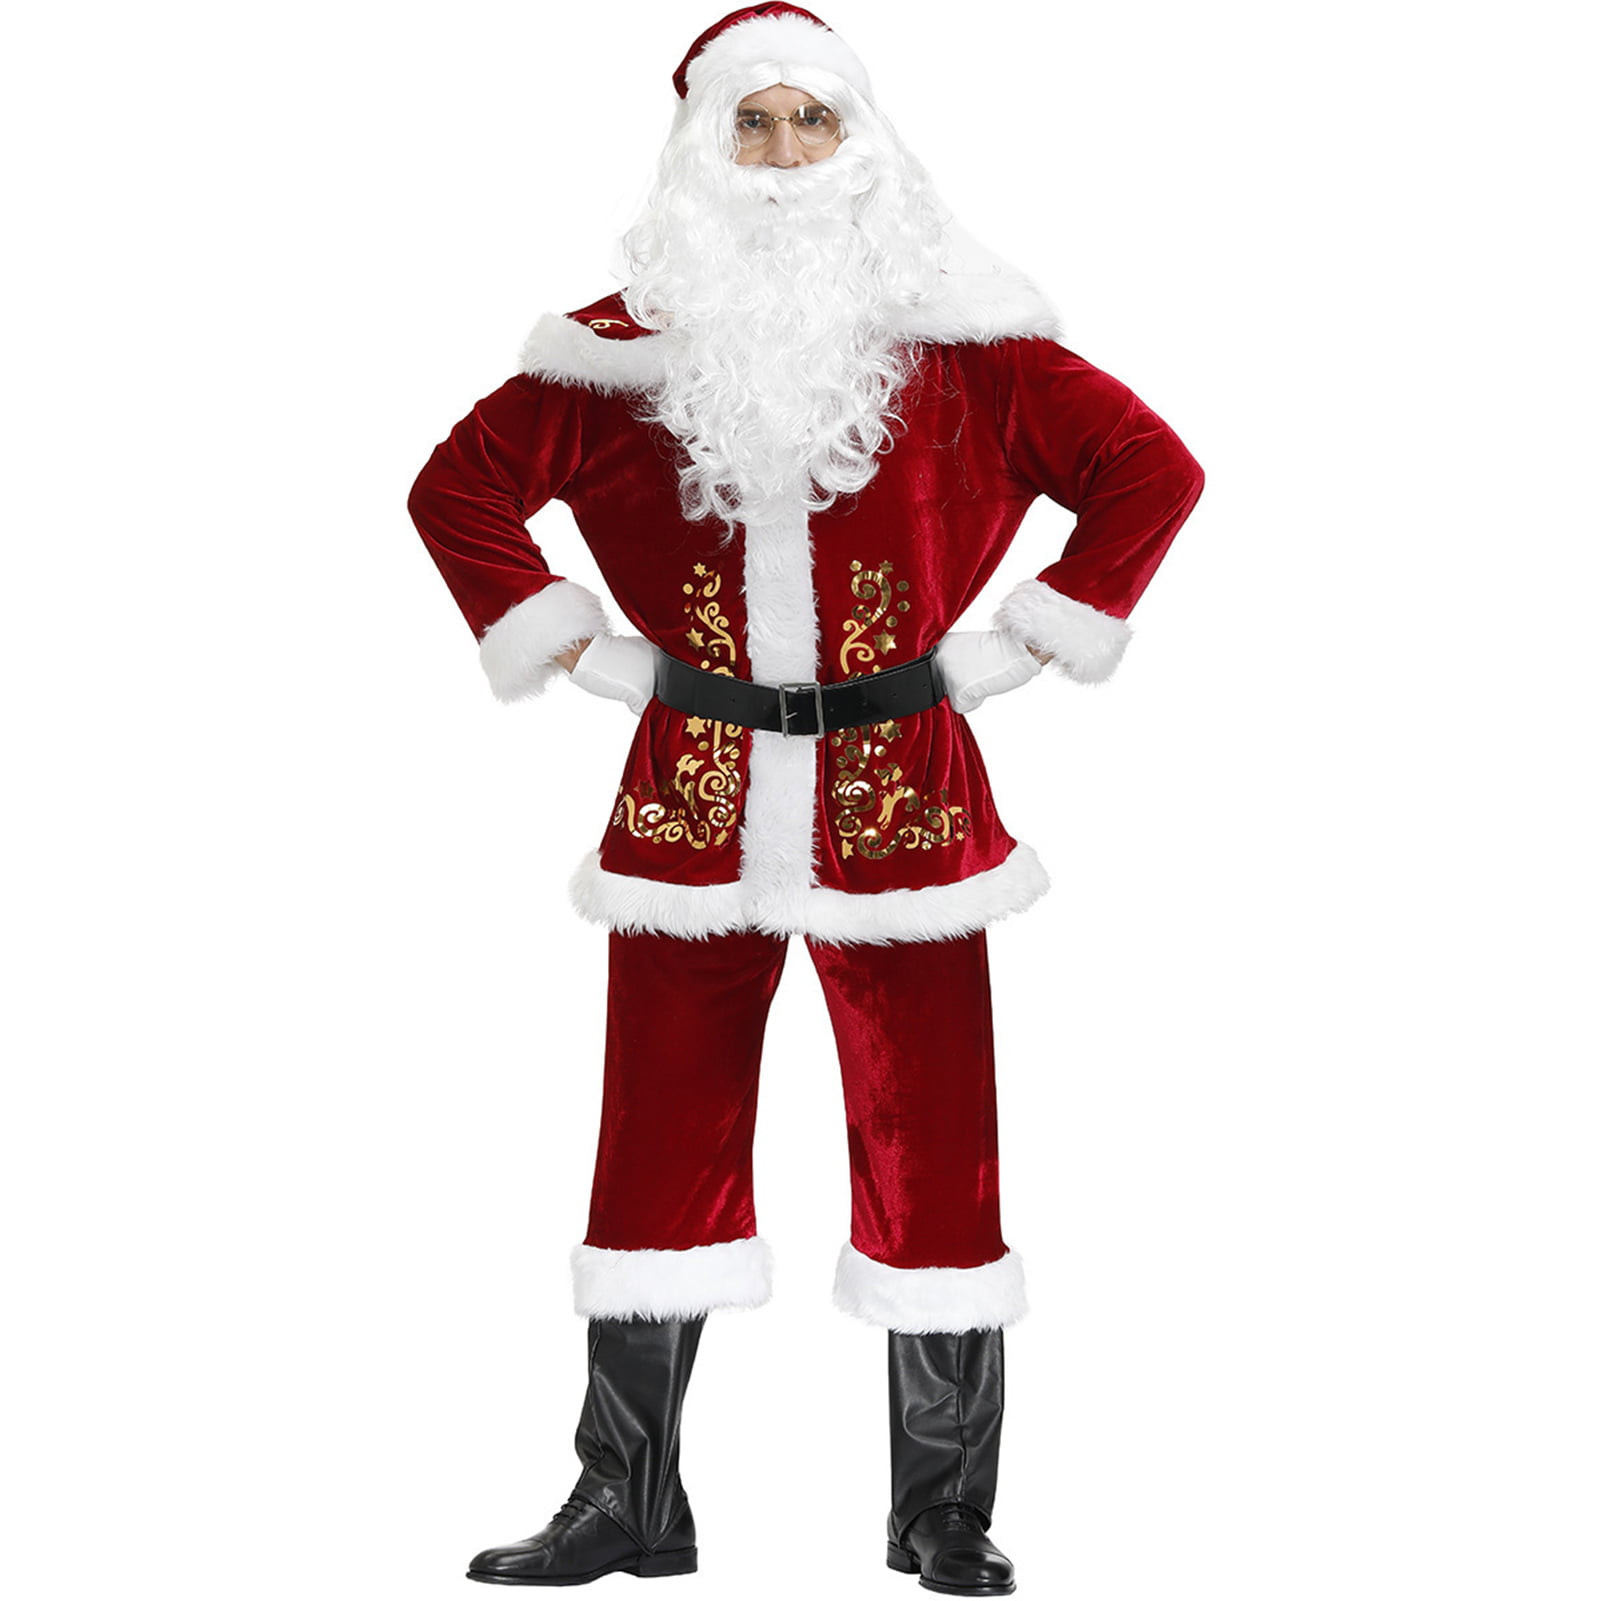 USA Santa Claus Suit Adult Deluxe Velvet Christmas Costume Fancy Dress Full Set 